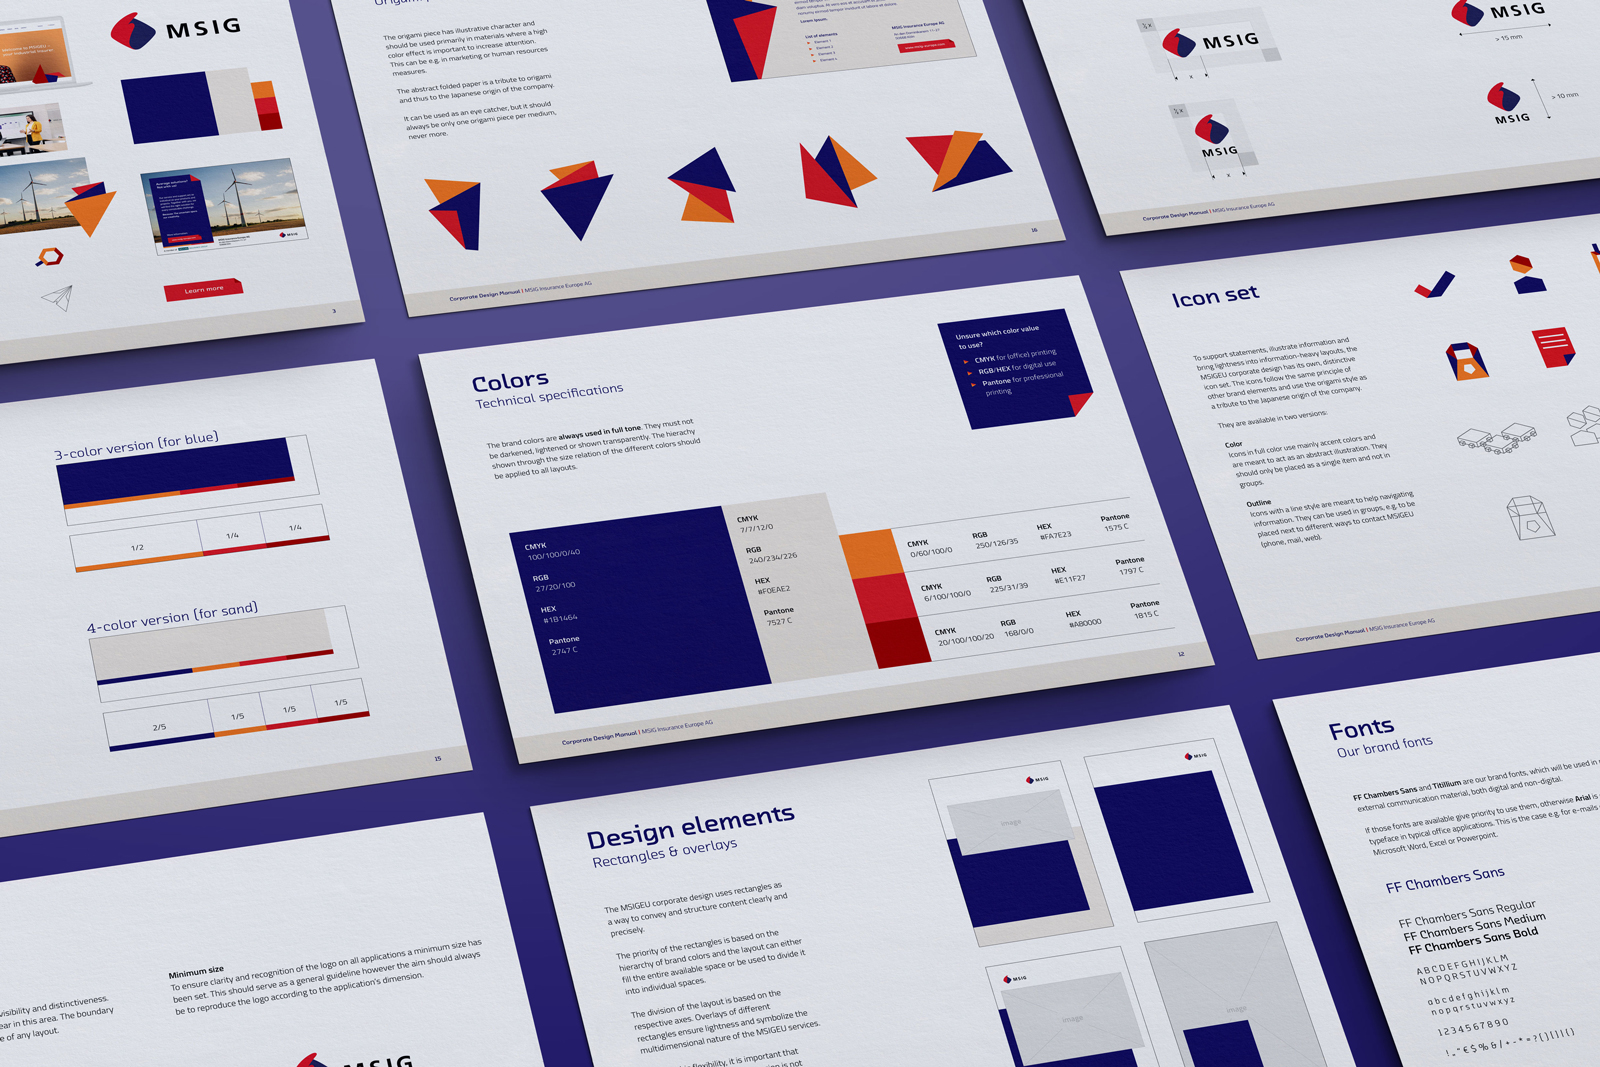 Isometrische Darstellung von neun Seiten aus dem MSIG Brand Manual mit Themen wie Colors, Icon Set, Design Elements und Fonts